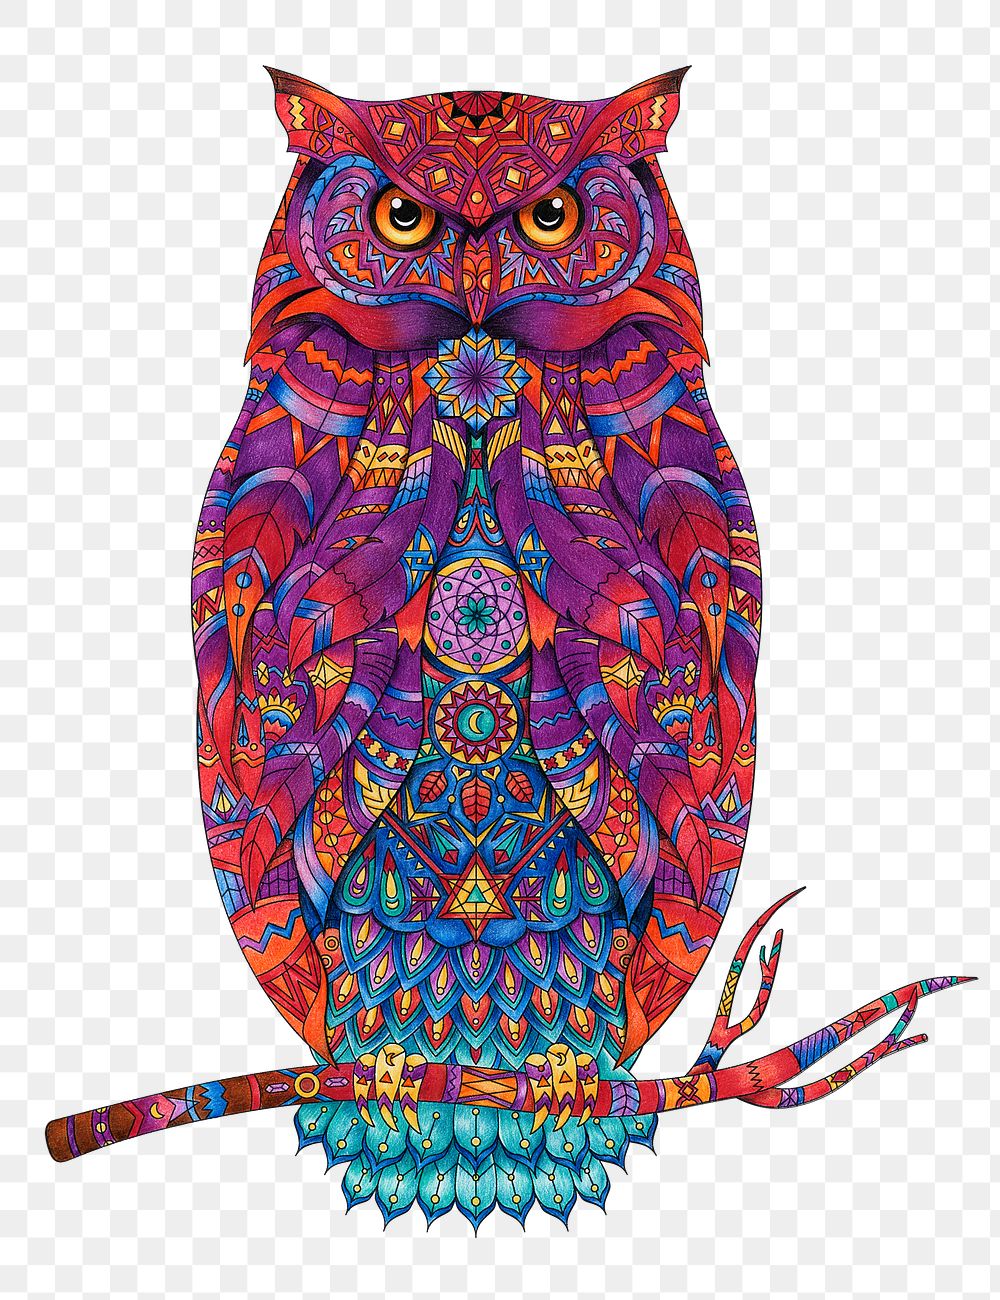 Patterned owl png animal sticker, transparent background